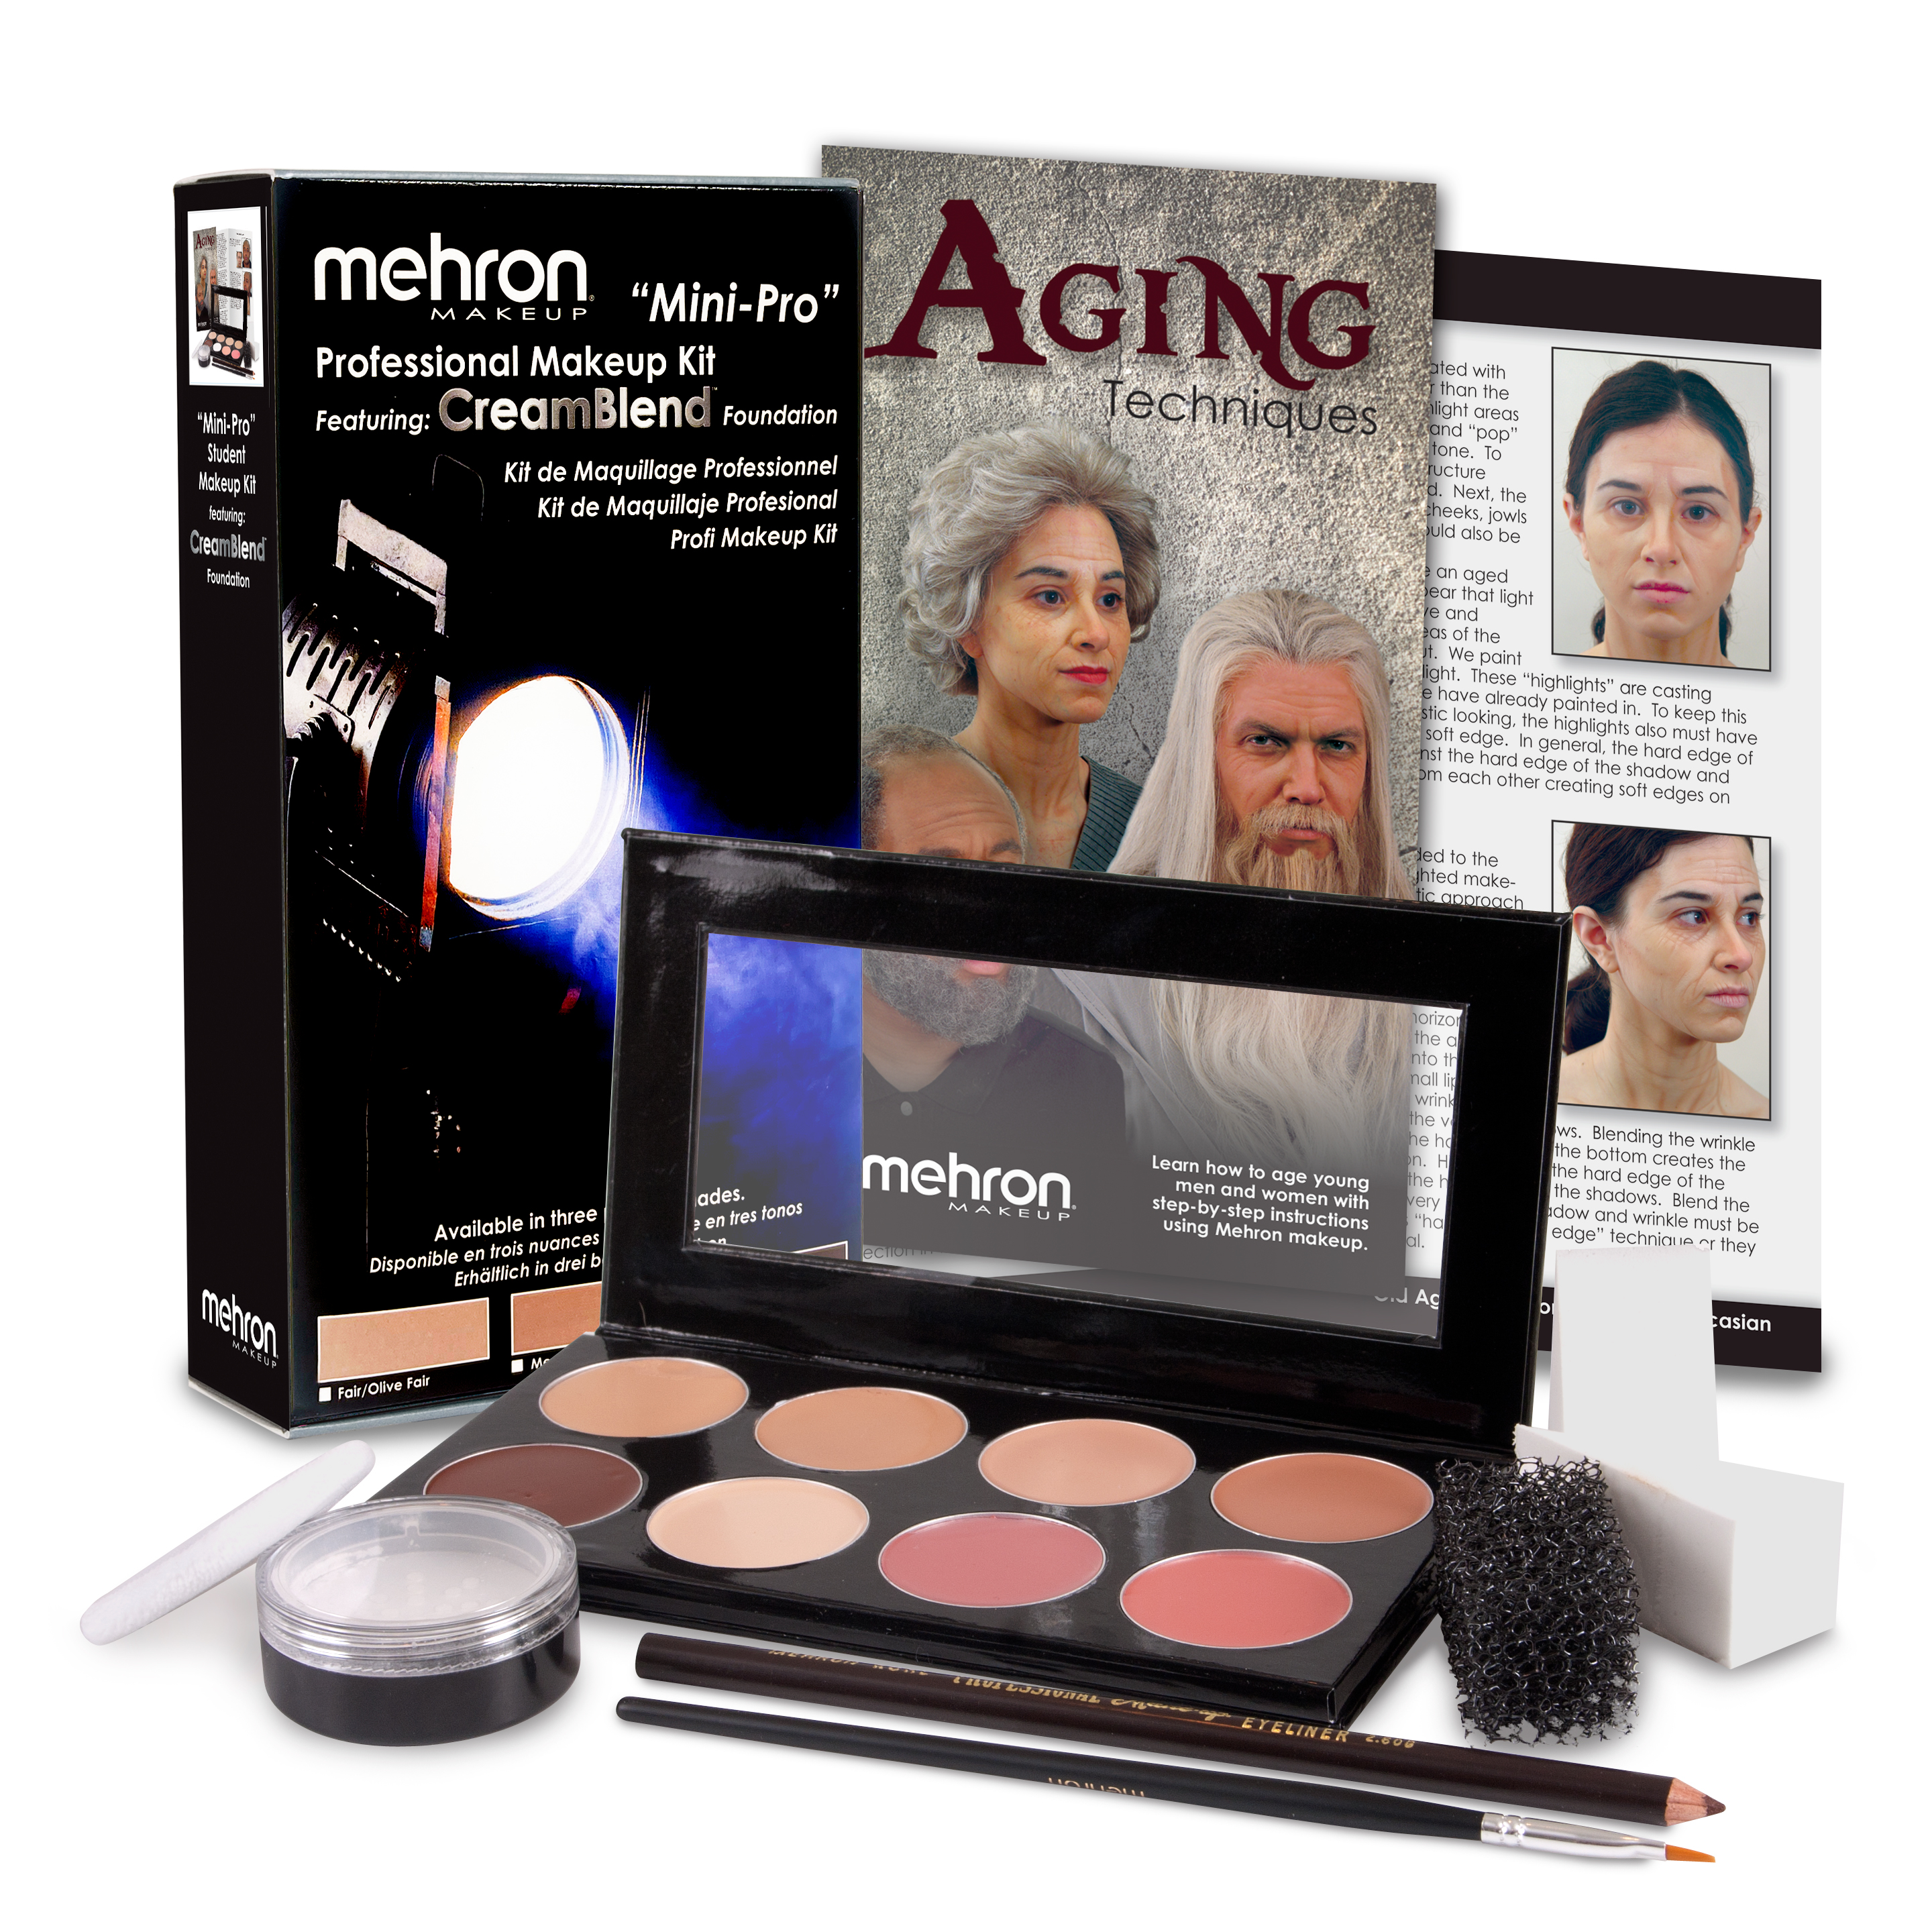 Mehron Goth/Punk Makeup Kit